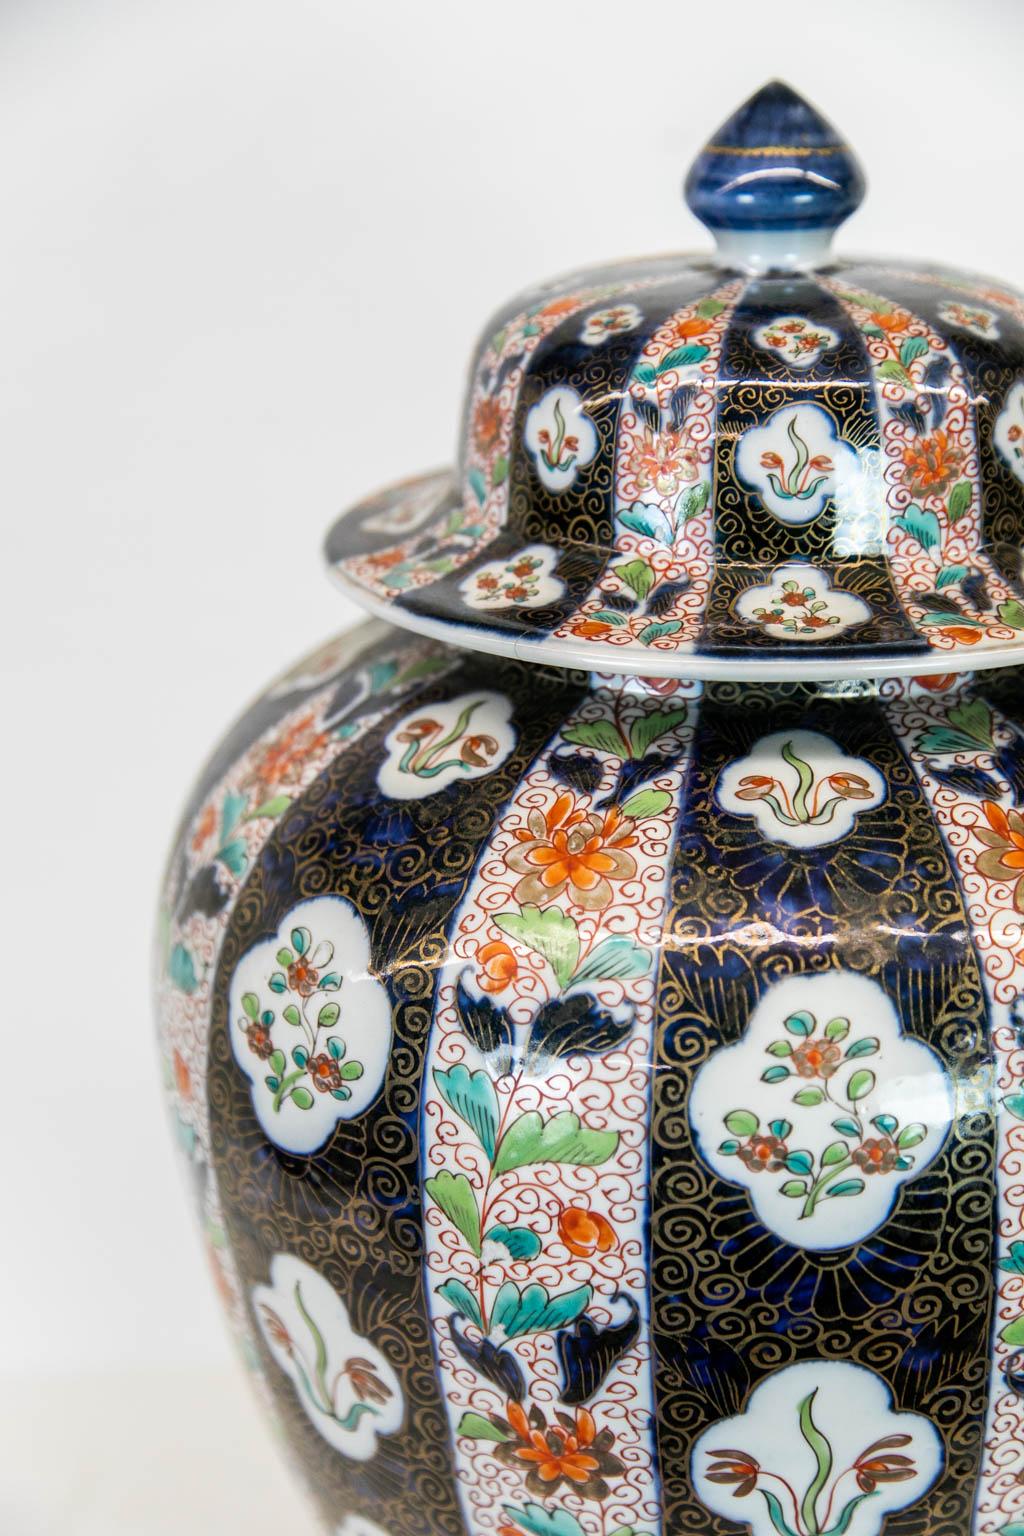 Der Deckel dieser Vase hat einen Haarriss. Die Vase ist in gutem Zustand. Sie ist mit floralen Motiven bemalt und mit vergoldeten Akzenten versehen.